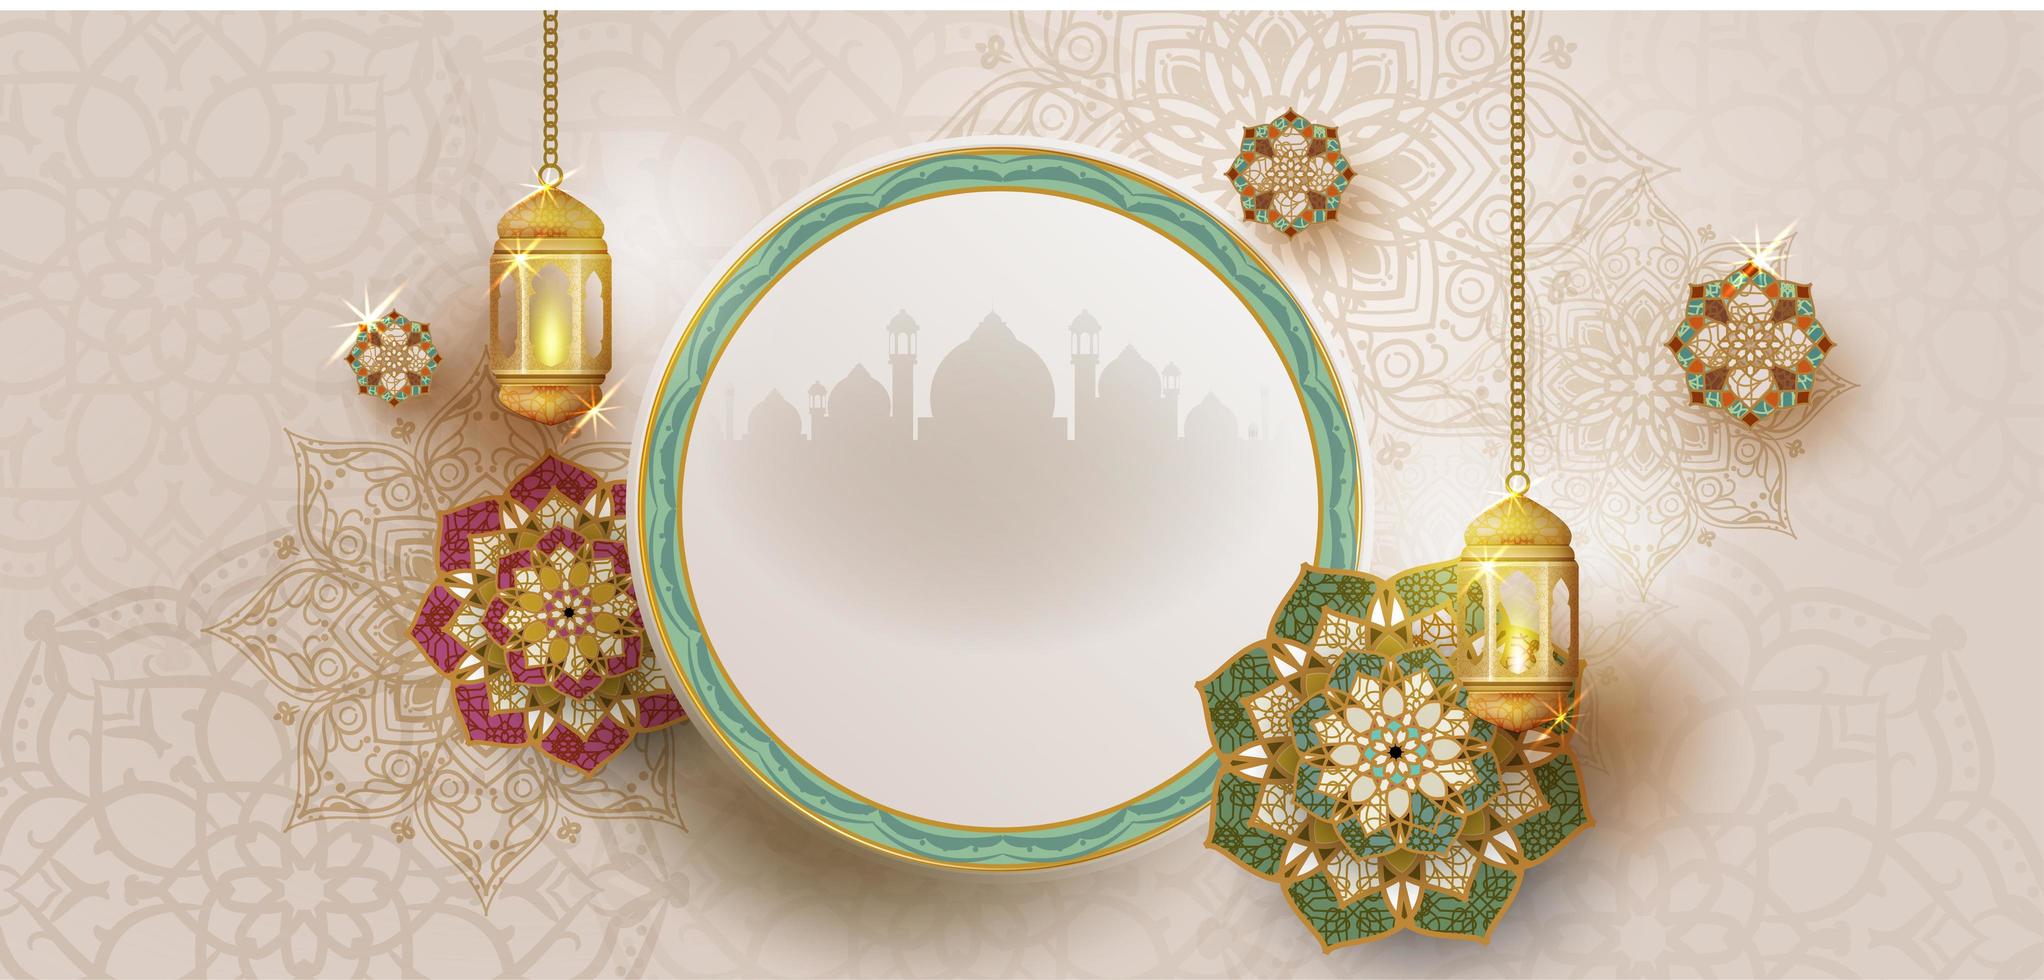 Ramadan Kareem Poster mit Rahmen und hängenden Laternen vektor